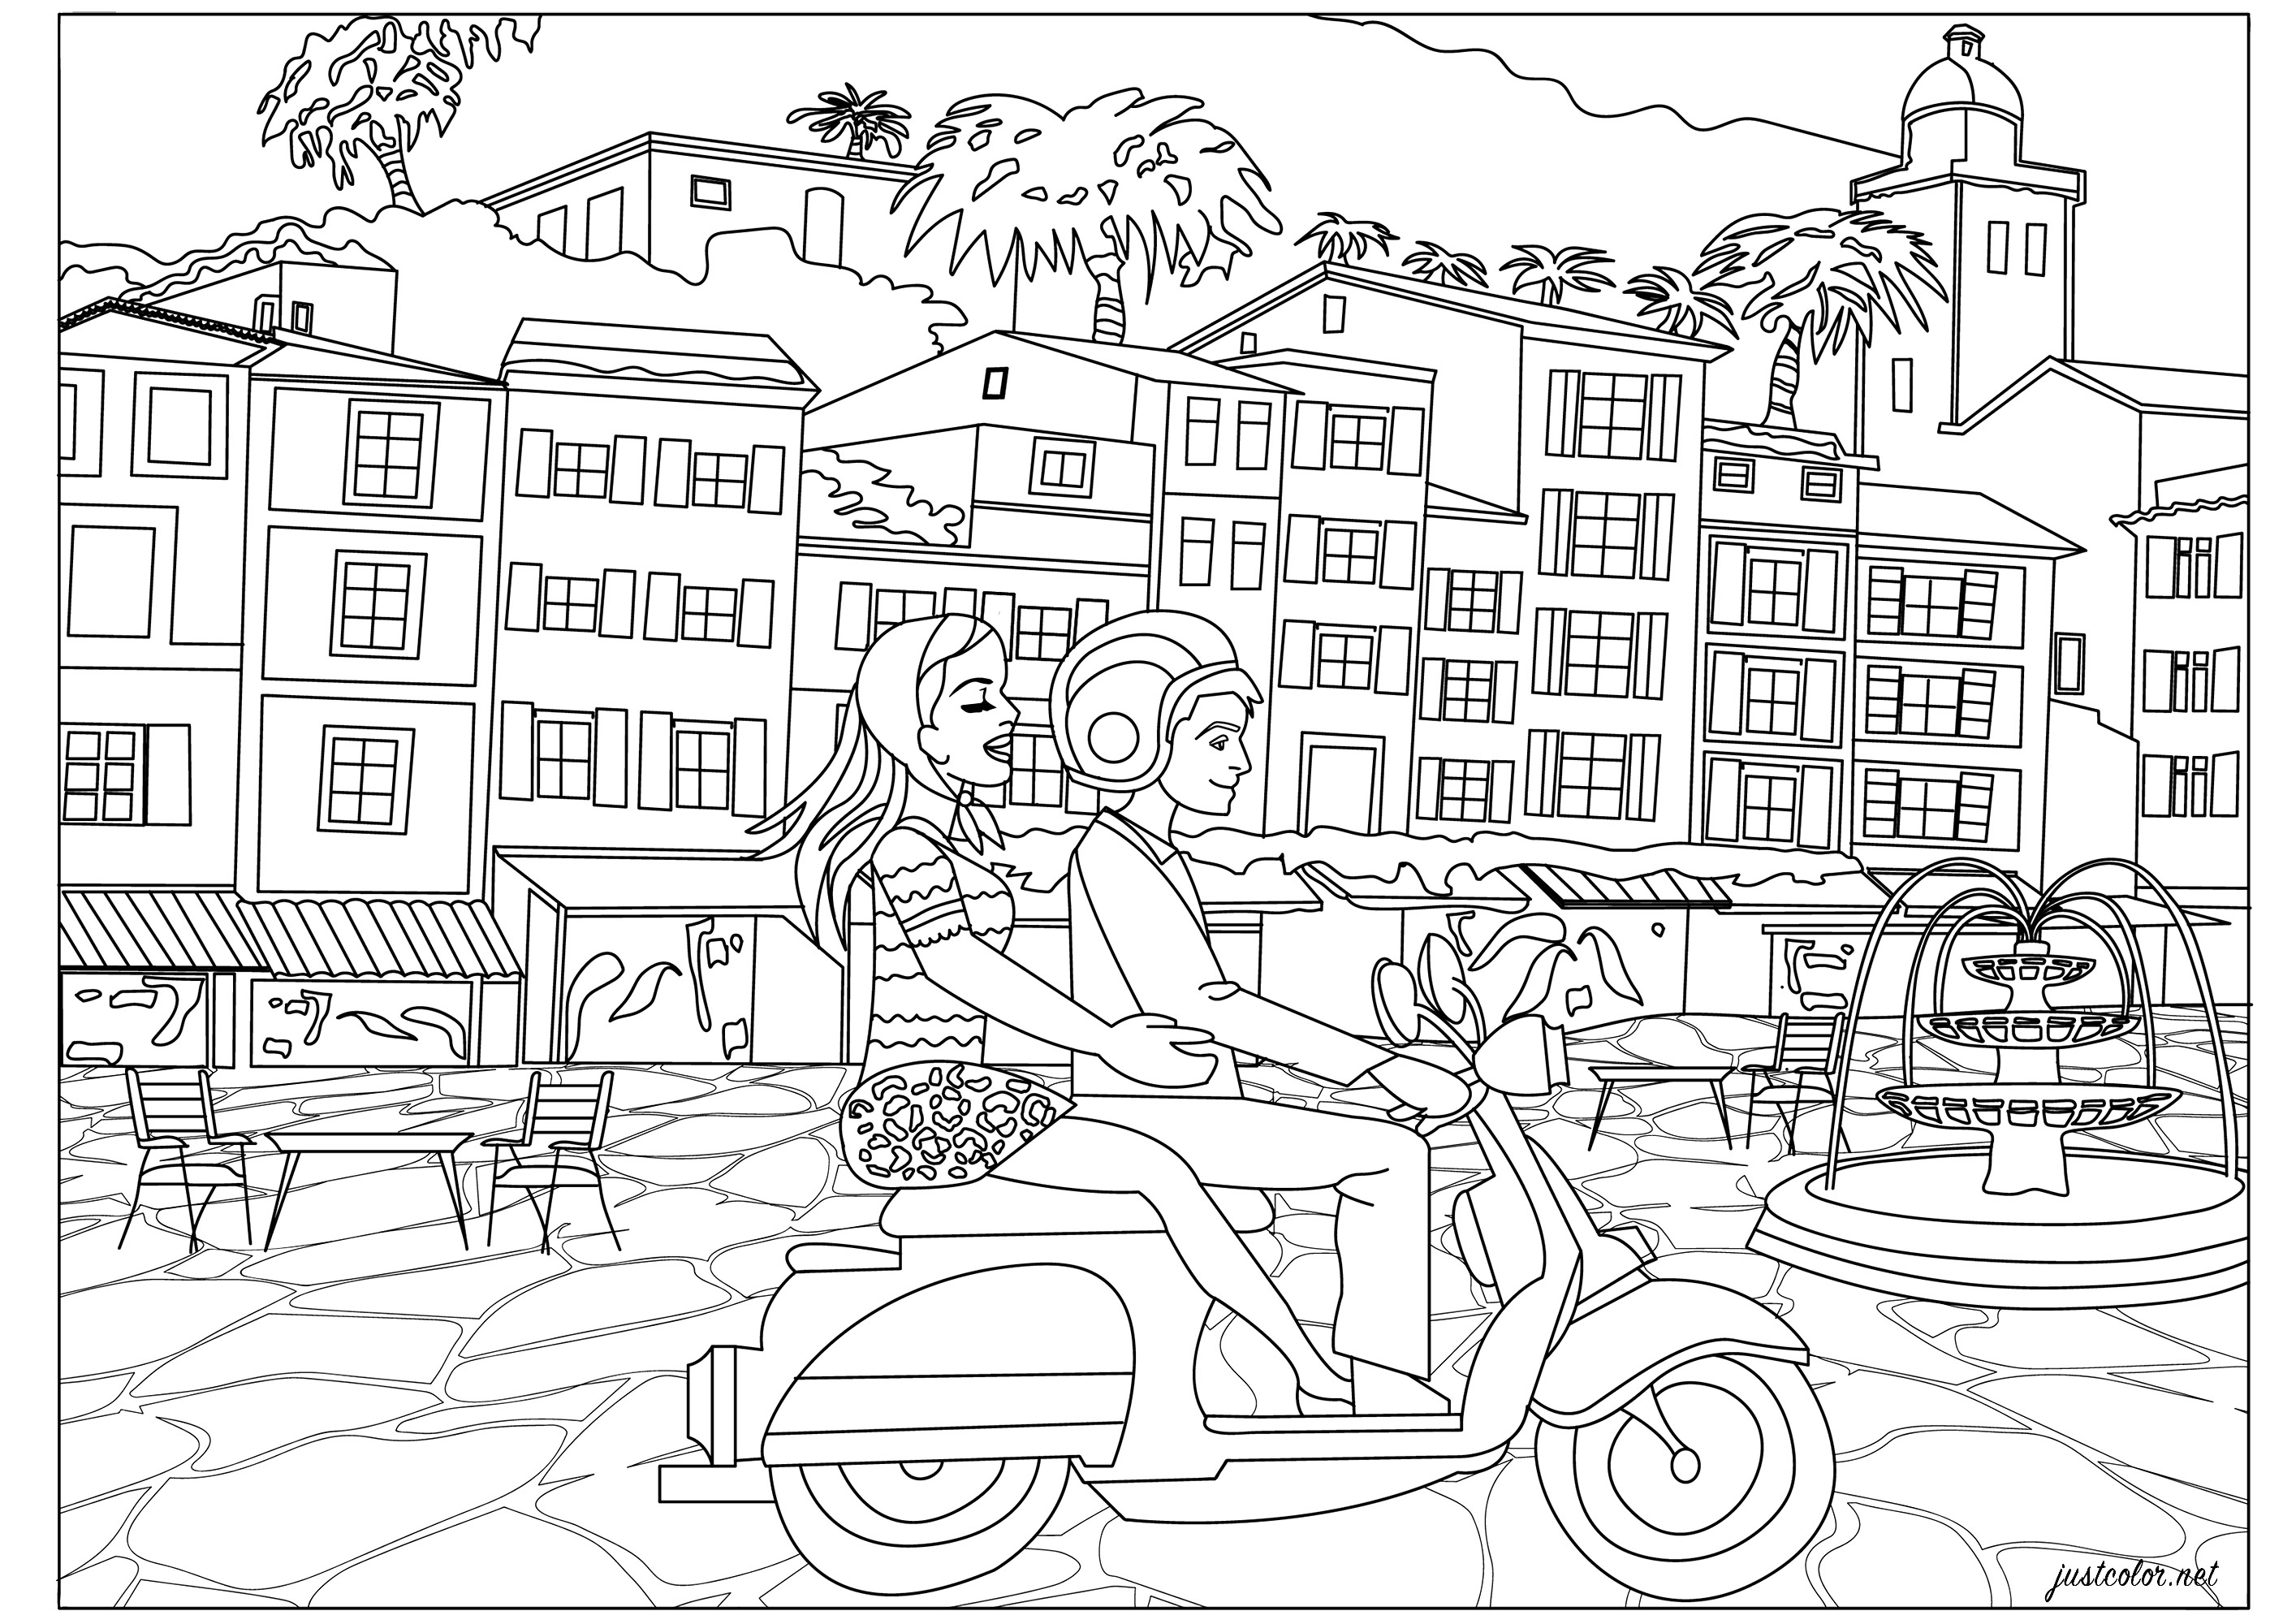 Vacances à l'italienne pour ce jeune couple sur son scooter vespa. Balade sur la côte avec la traversée de jolis villages... Coloriez ces typiques maisons italiennes, la fontaine sur la place, le scooter et recréez l'ambiance 'dolce vita' !, Artiste : Morgan